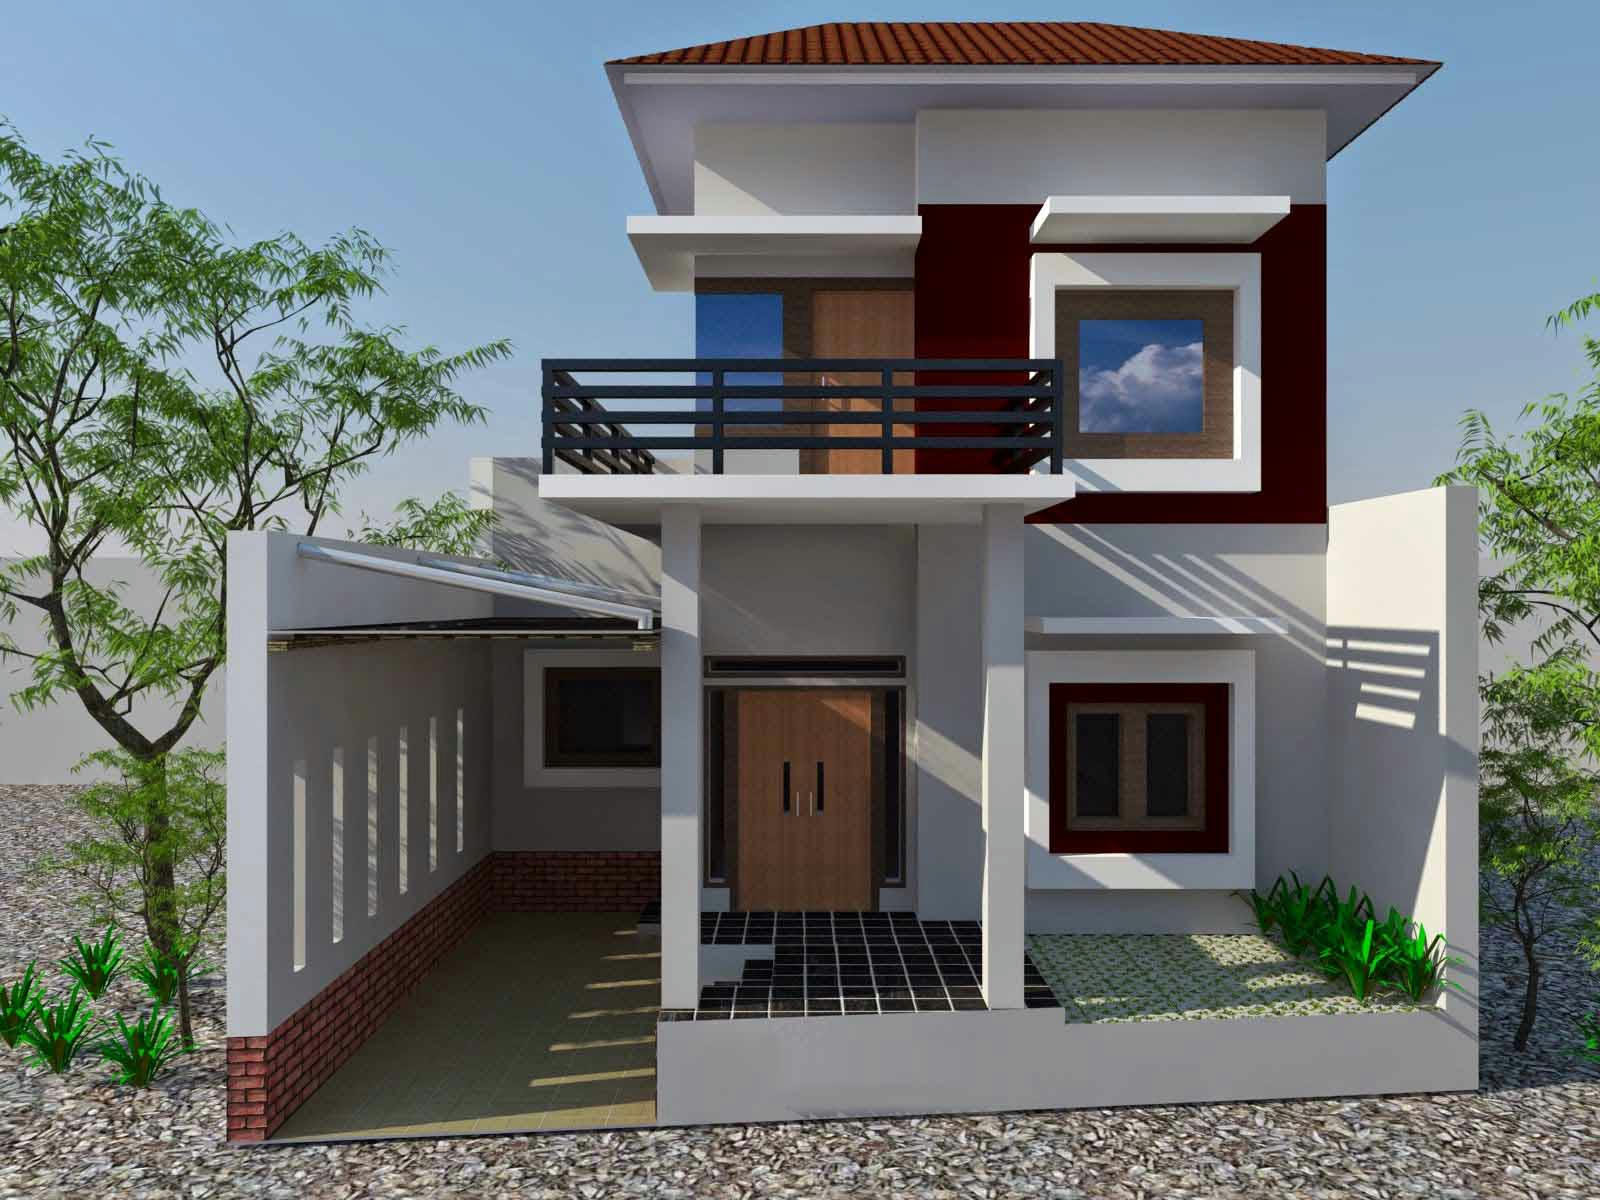 68 Contoh Desain Rumah Minimalis Modern 2 Lantai Desain Rumah